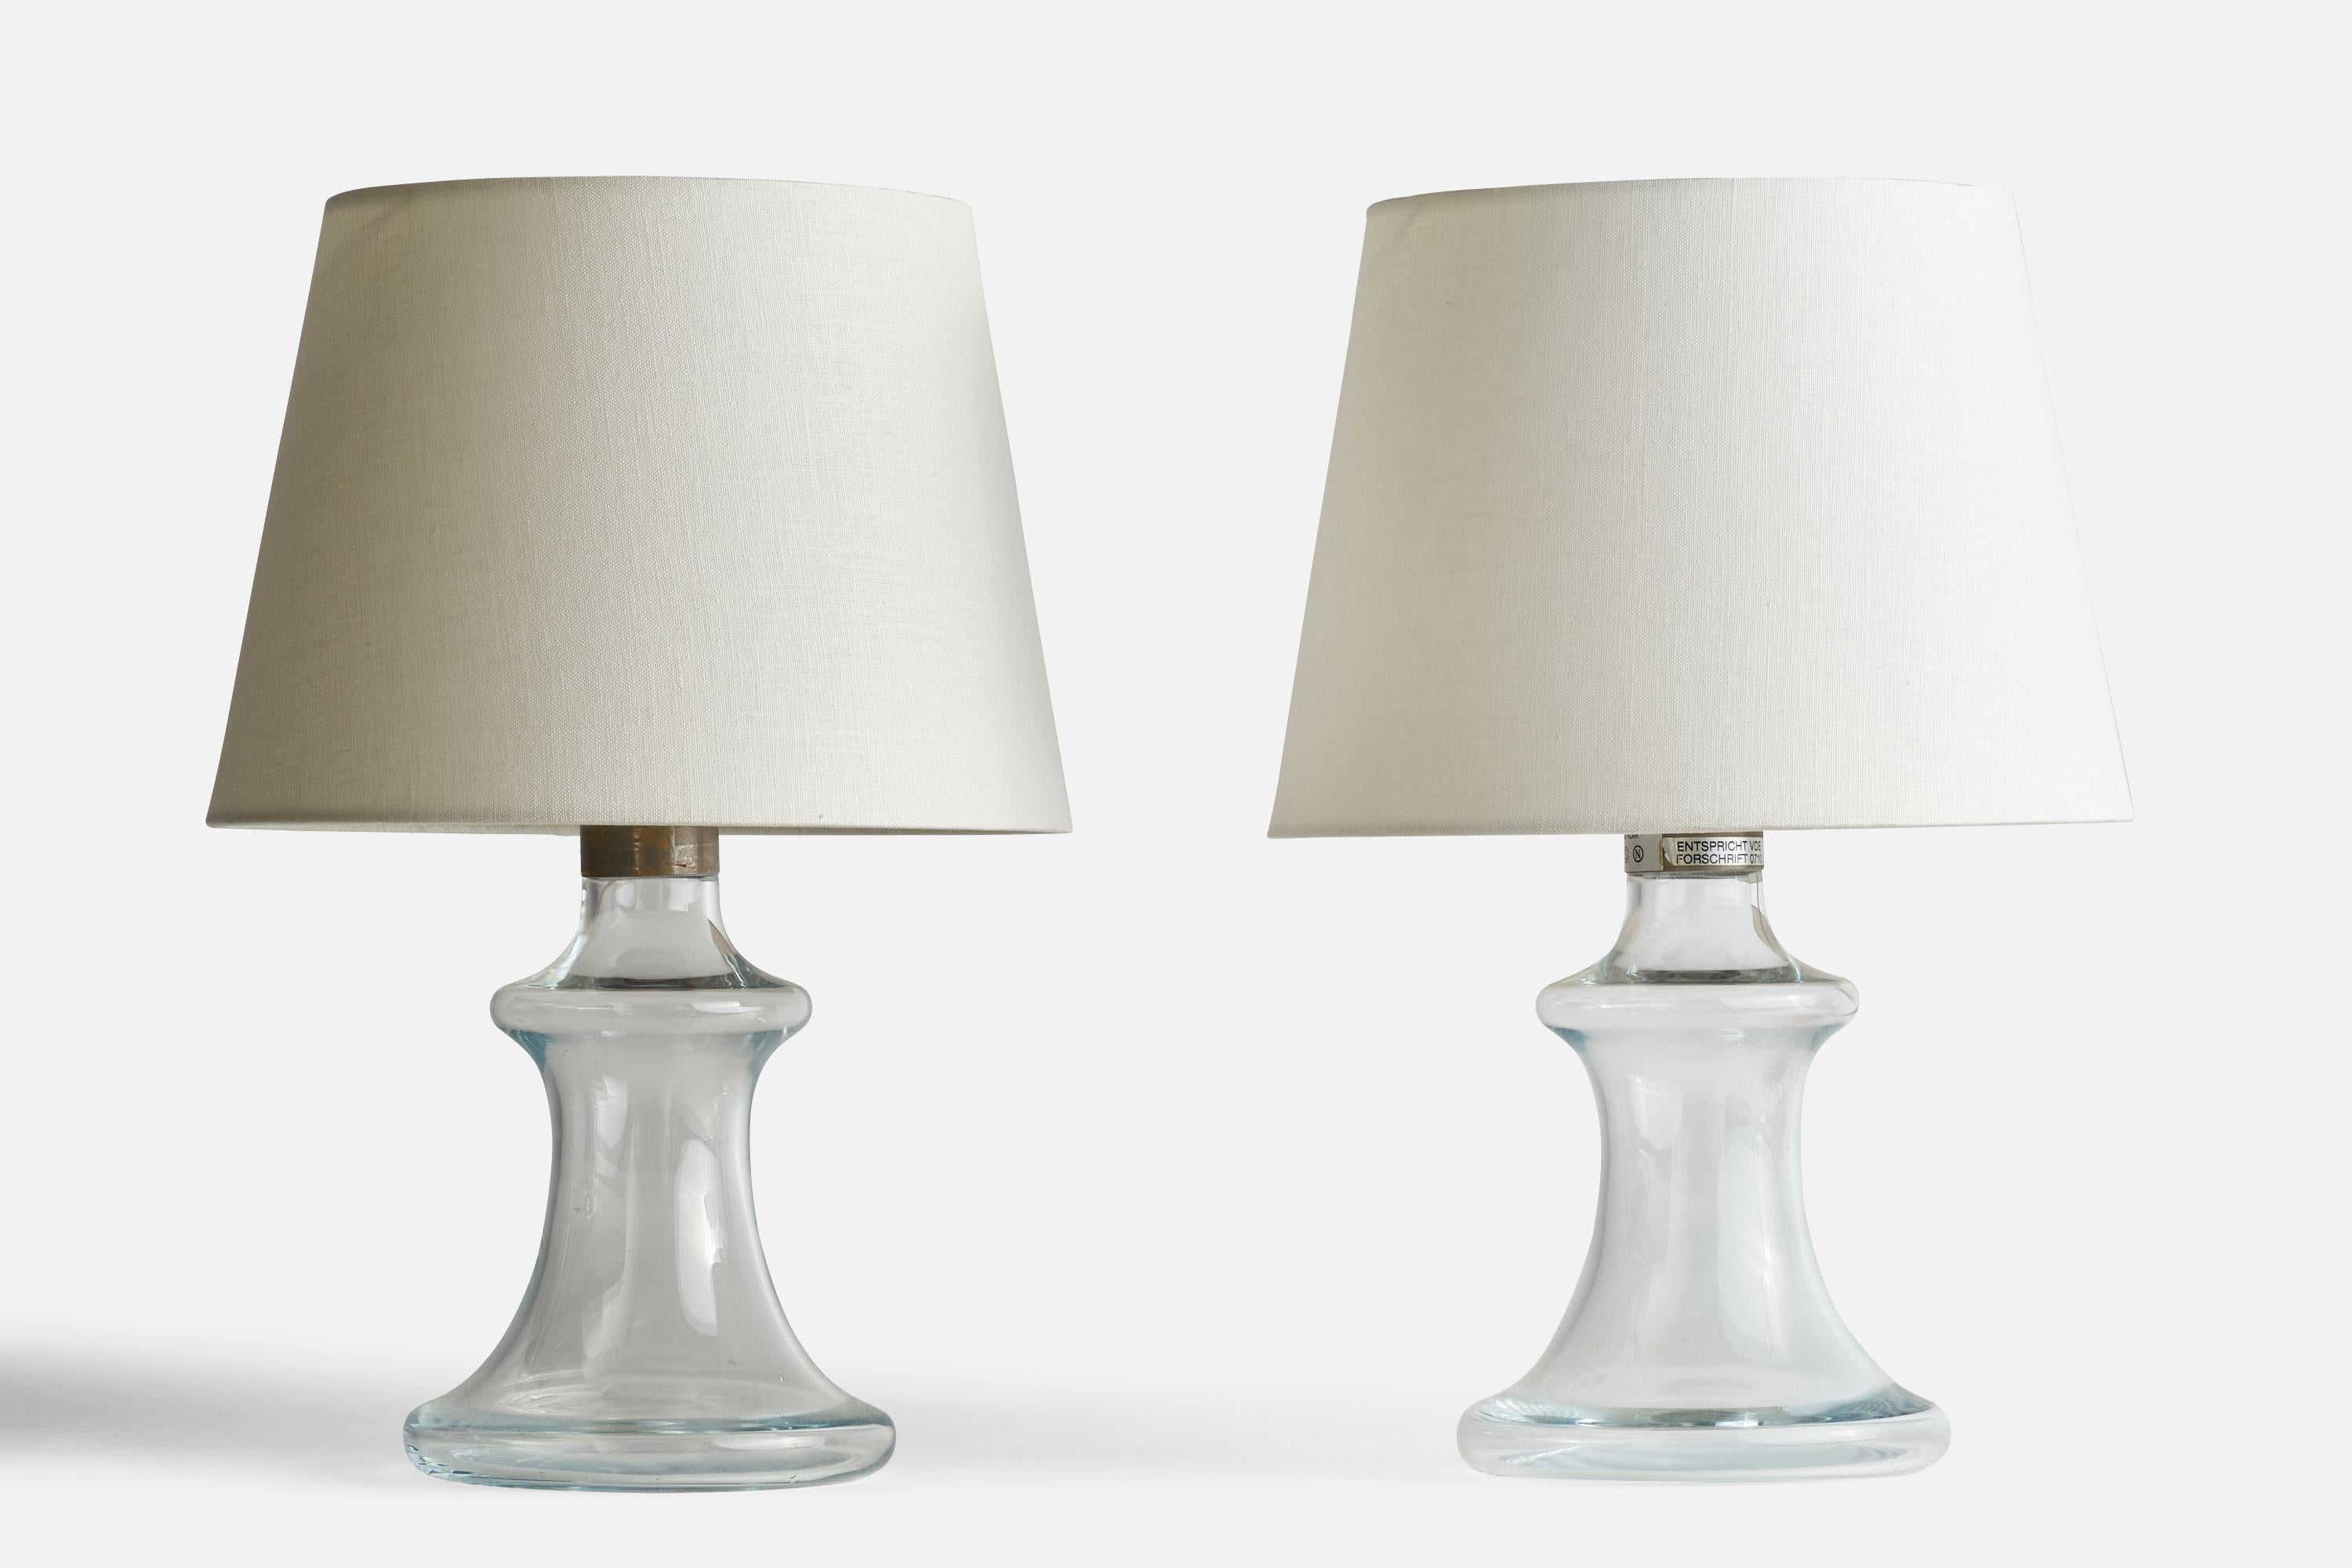 Ein Paar Tischlampen aus Glas und Metall, entworfen von Jacob Bang und hergestellt von Holmegaard, Dänemark, ca. 1970er Jahre.

Bitte beachten Sie, dass das Kabel aus der Steckdose kommt und sichtbar entlang der Basis verläuft.

Abmessungen der